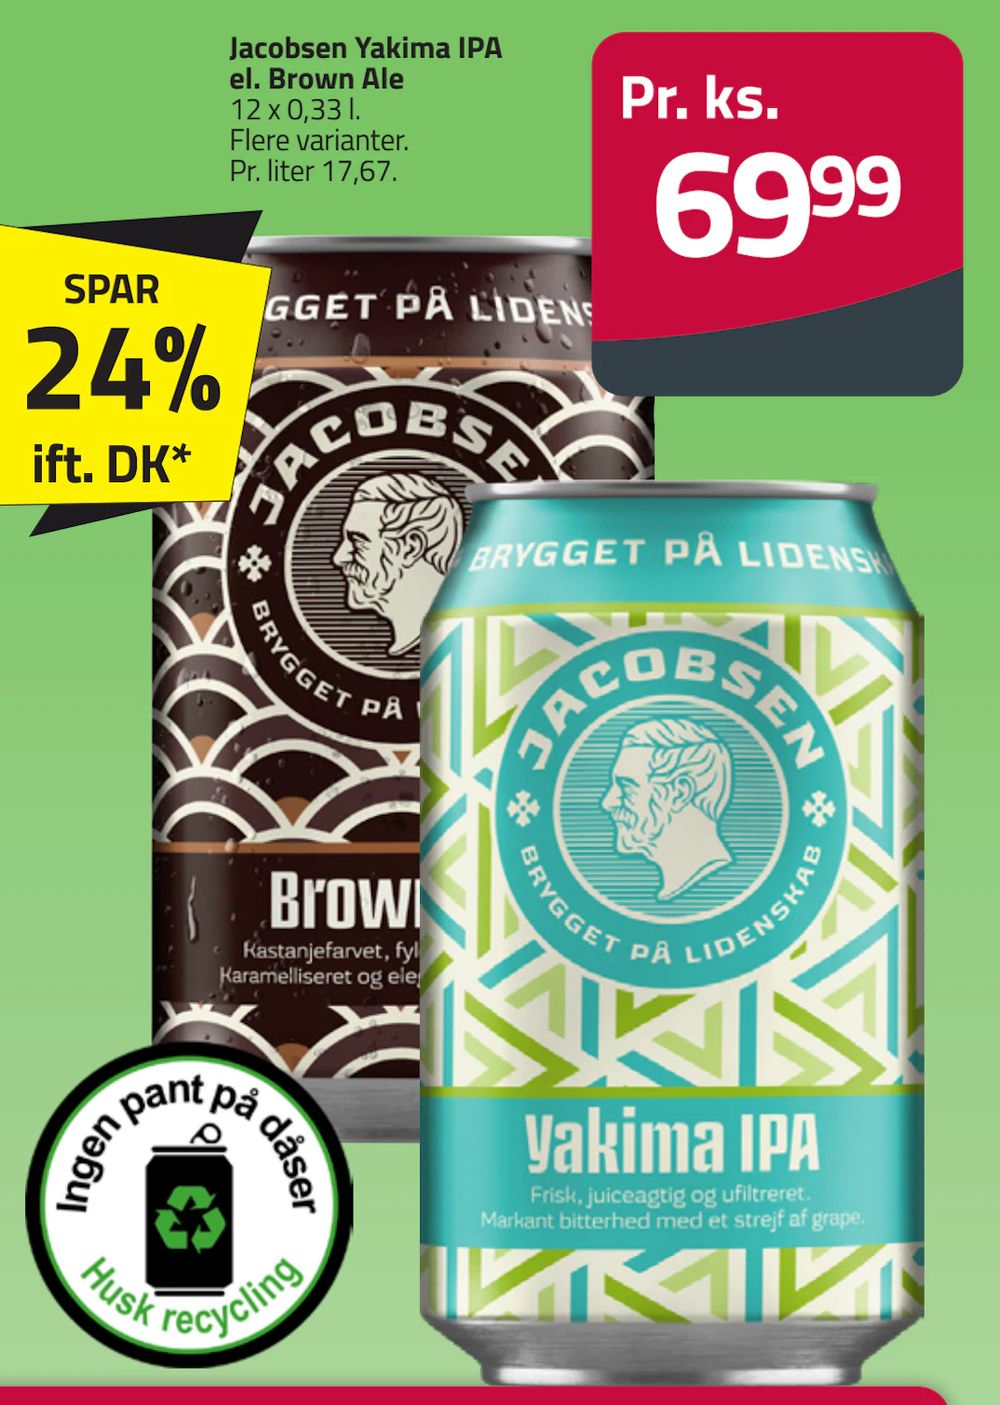 Tilbud på Jacobsen Yakima IPA el. Brown Ale fra Fleggaard til 69,99 kr.